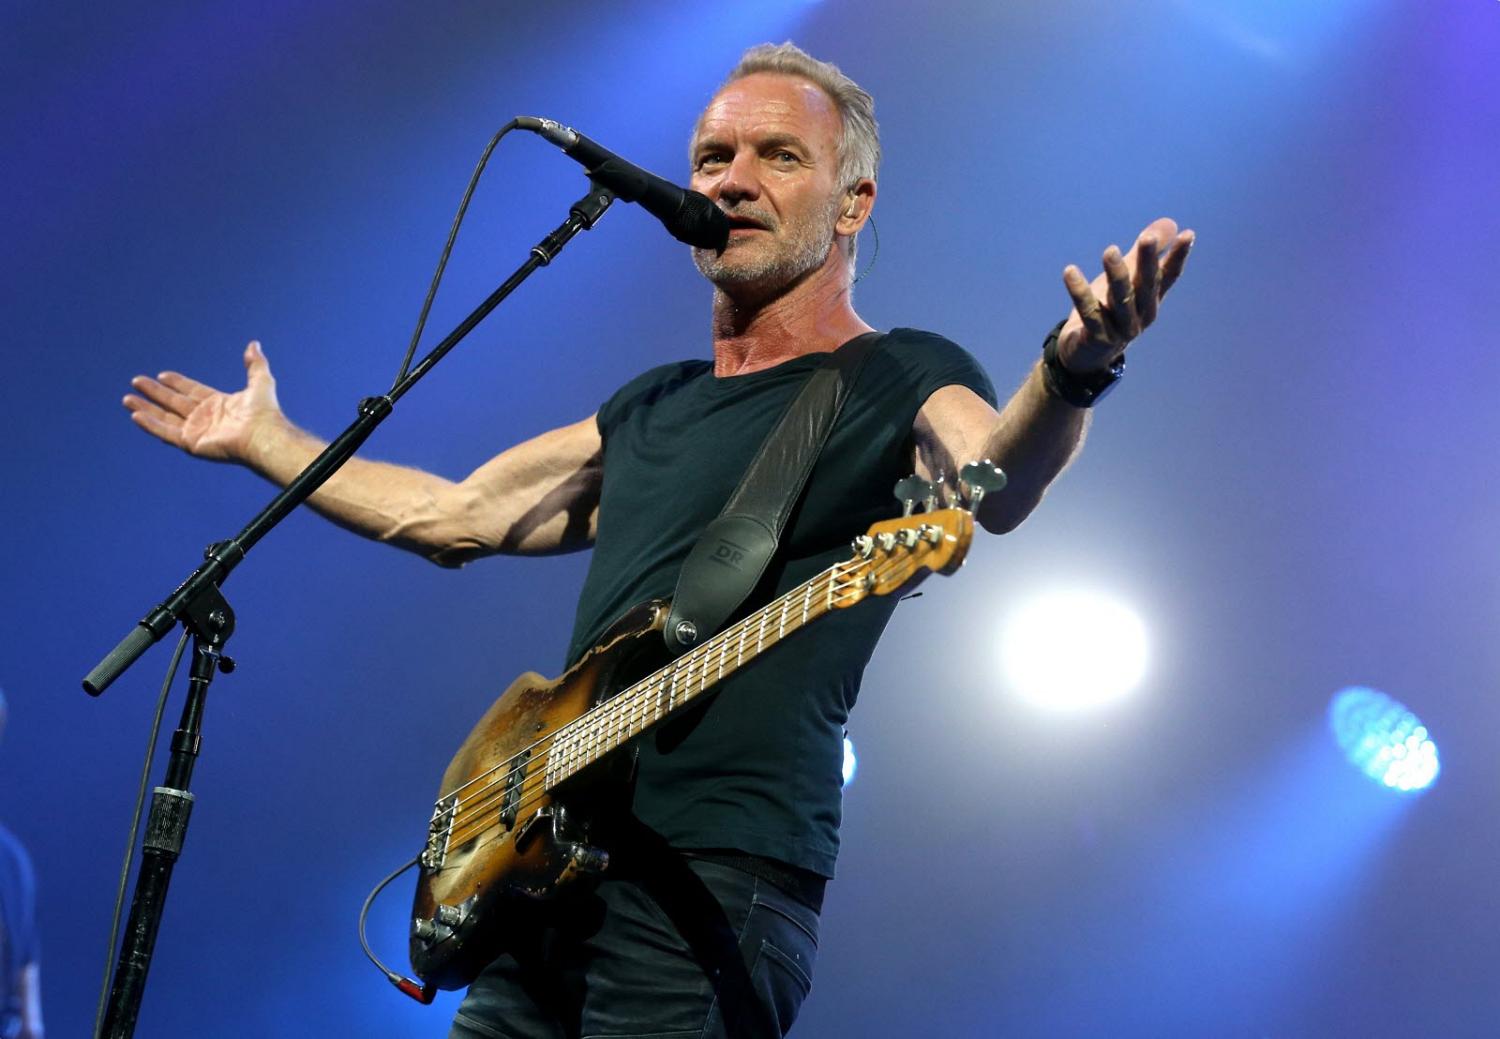 Sting, bras ouverts, sur scène, parlant ou chantant dans un microphone.